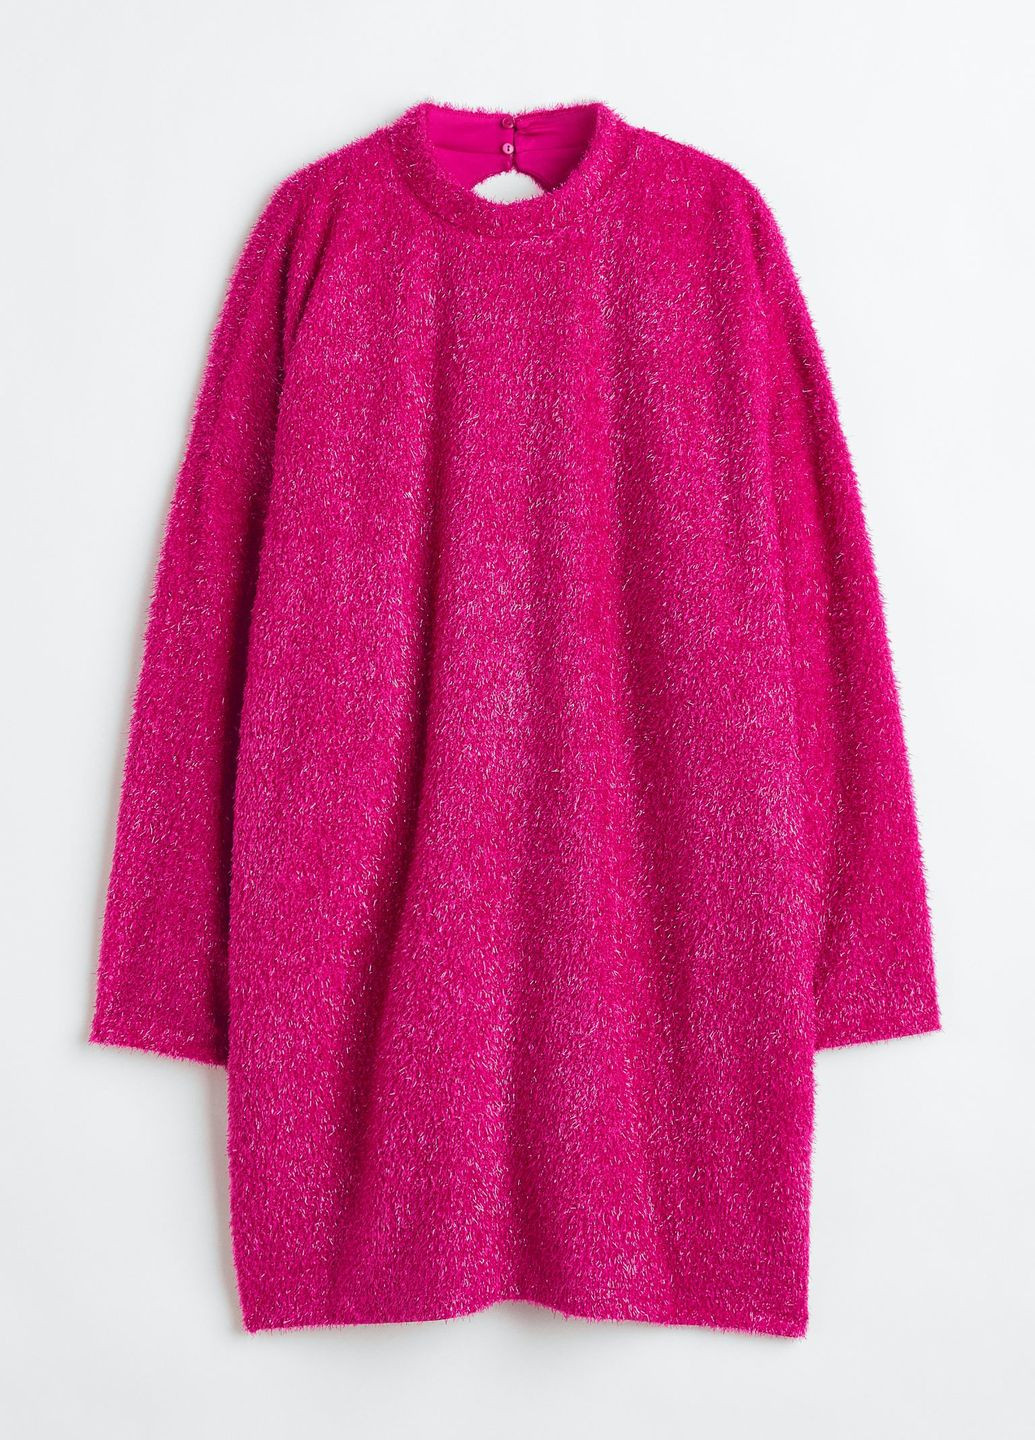 Фуксиновое (цвета Фуксия) повседневный платье H&M однотонное